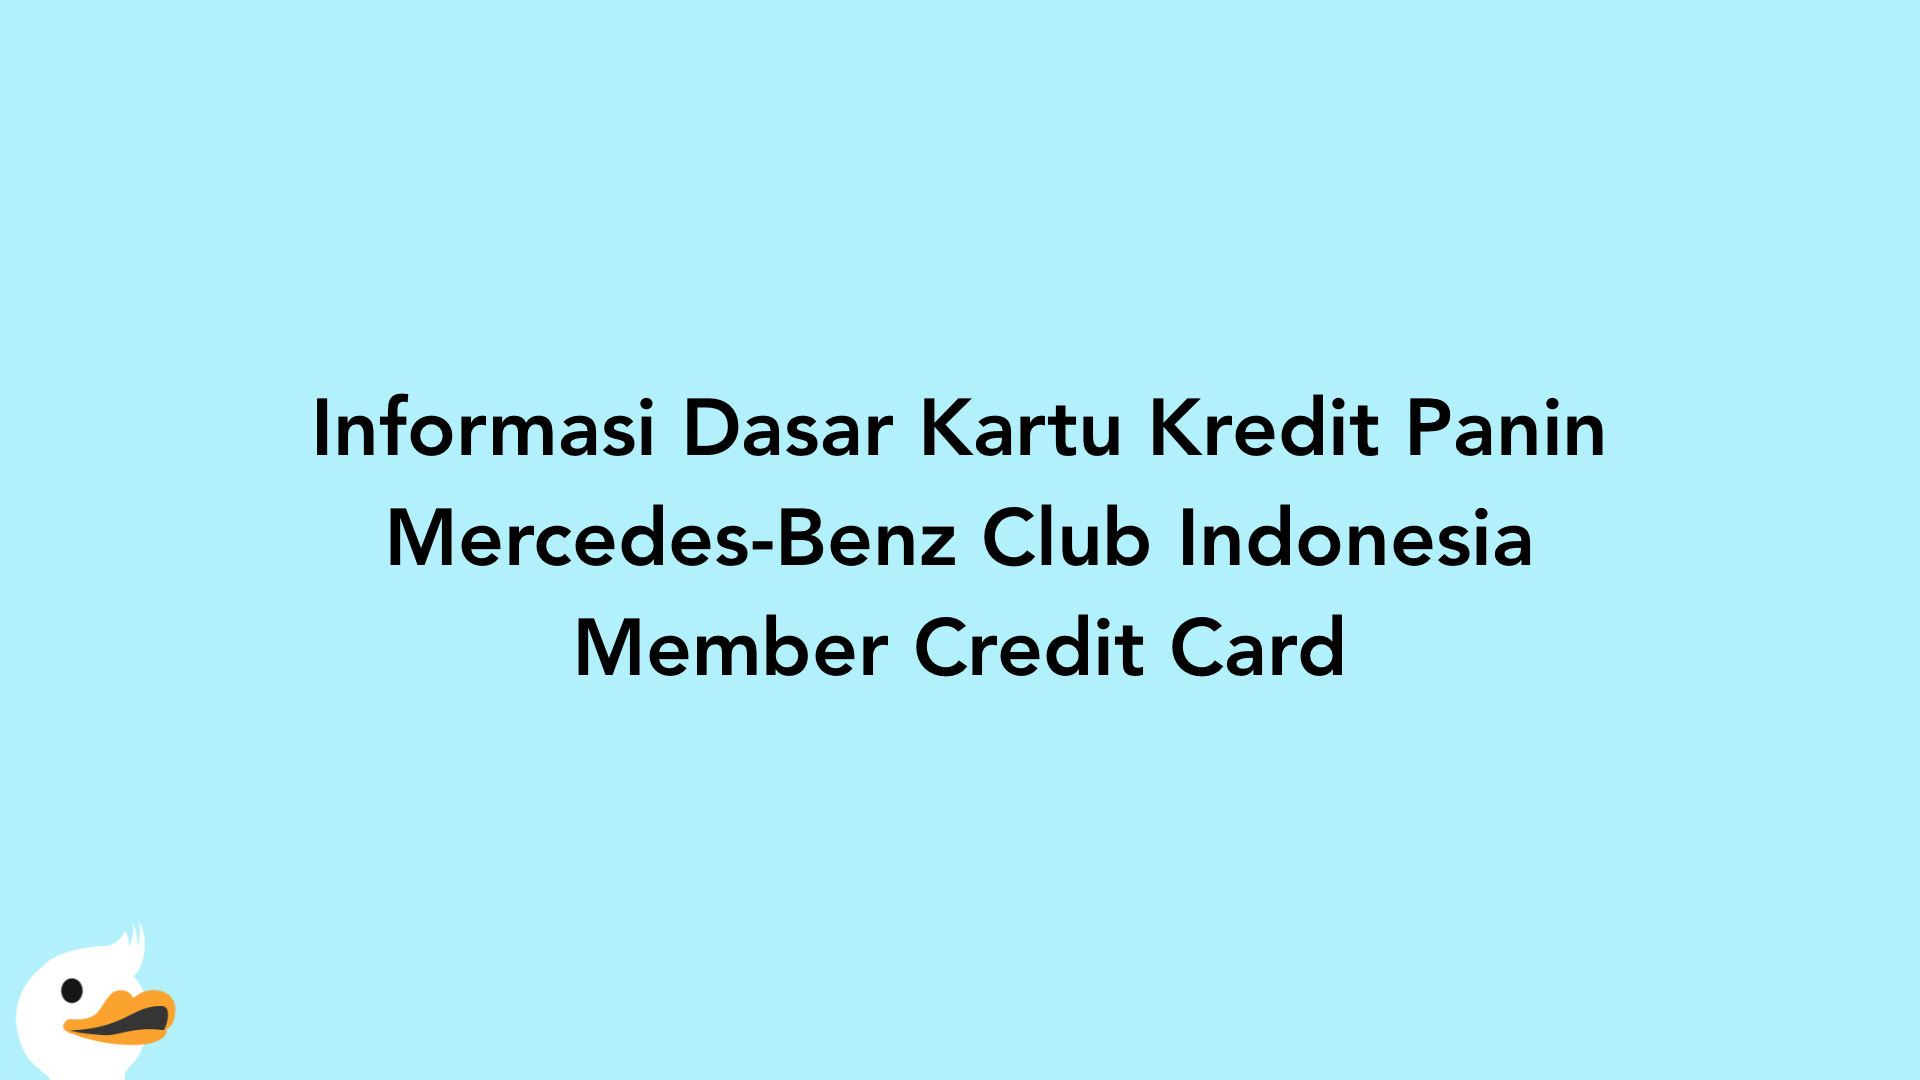 Informasi Dasar Kartu Kredit Panin Mercedes-Benz Club Indonesia Member Credit Card